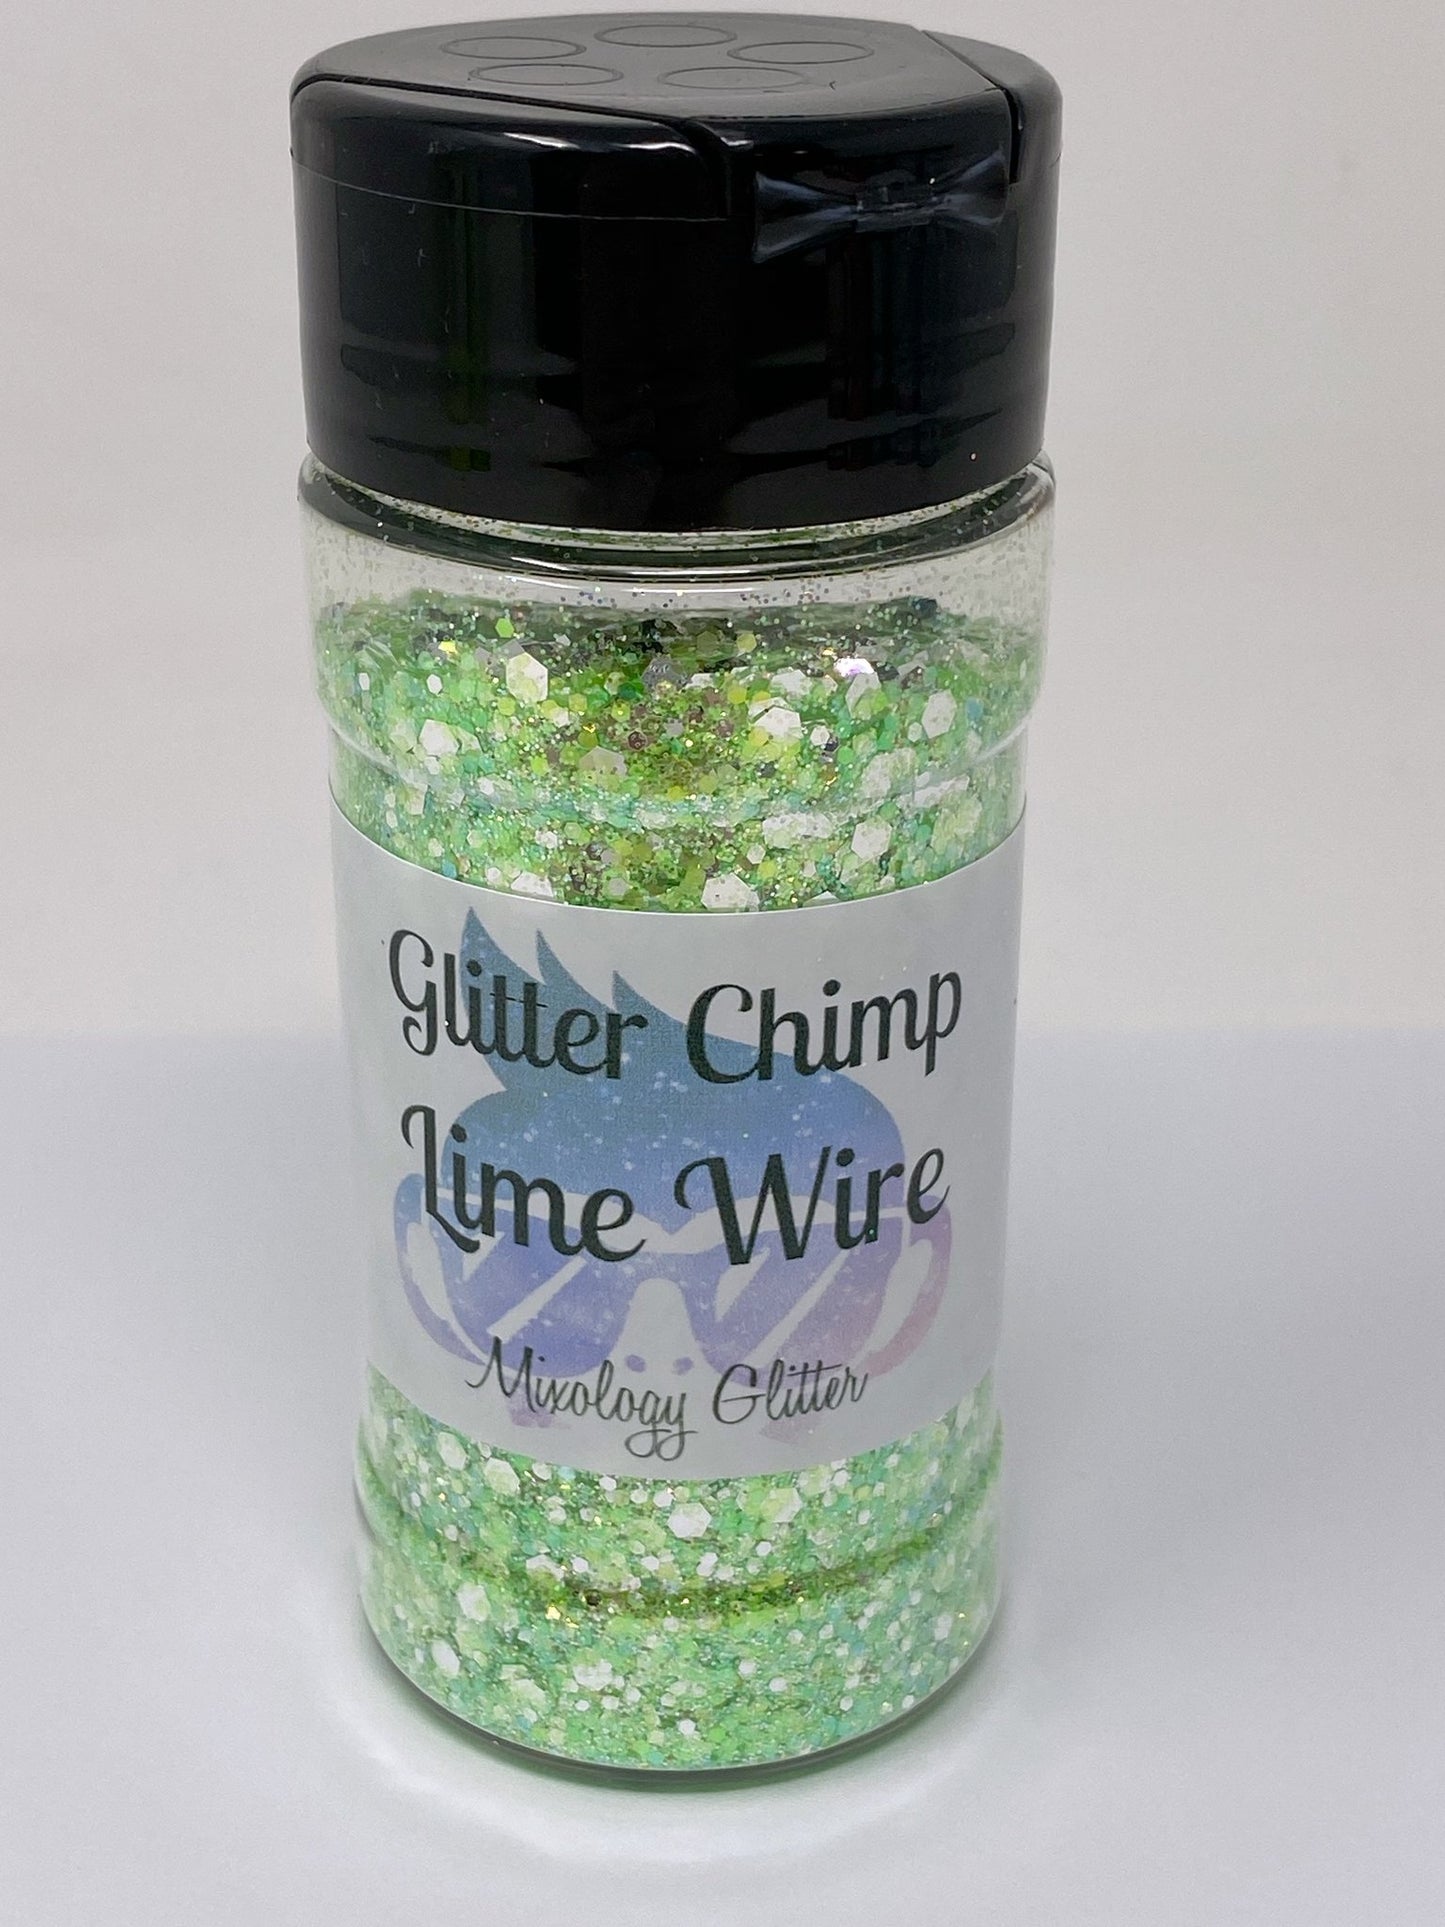 Glitter Chimp  Lime Wire Mixology Glitter